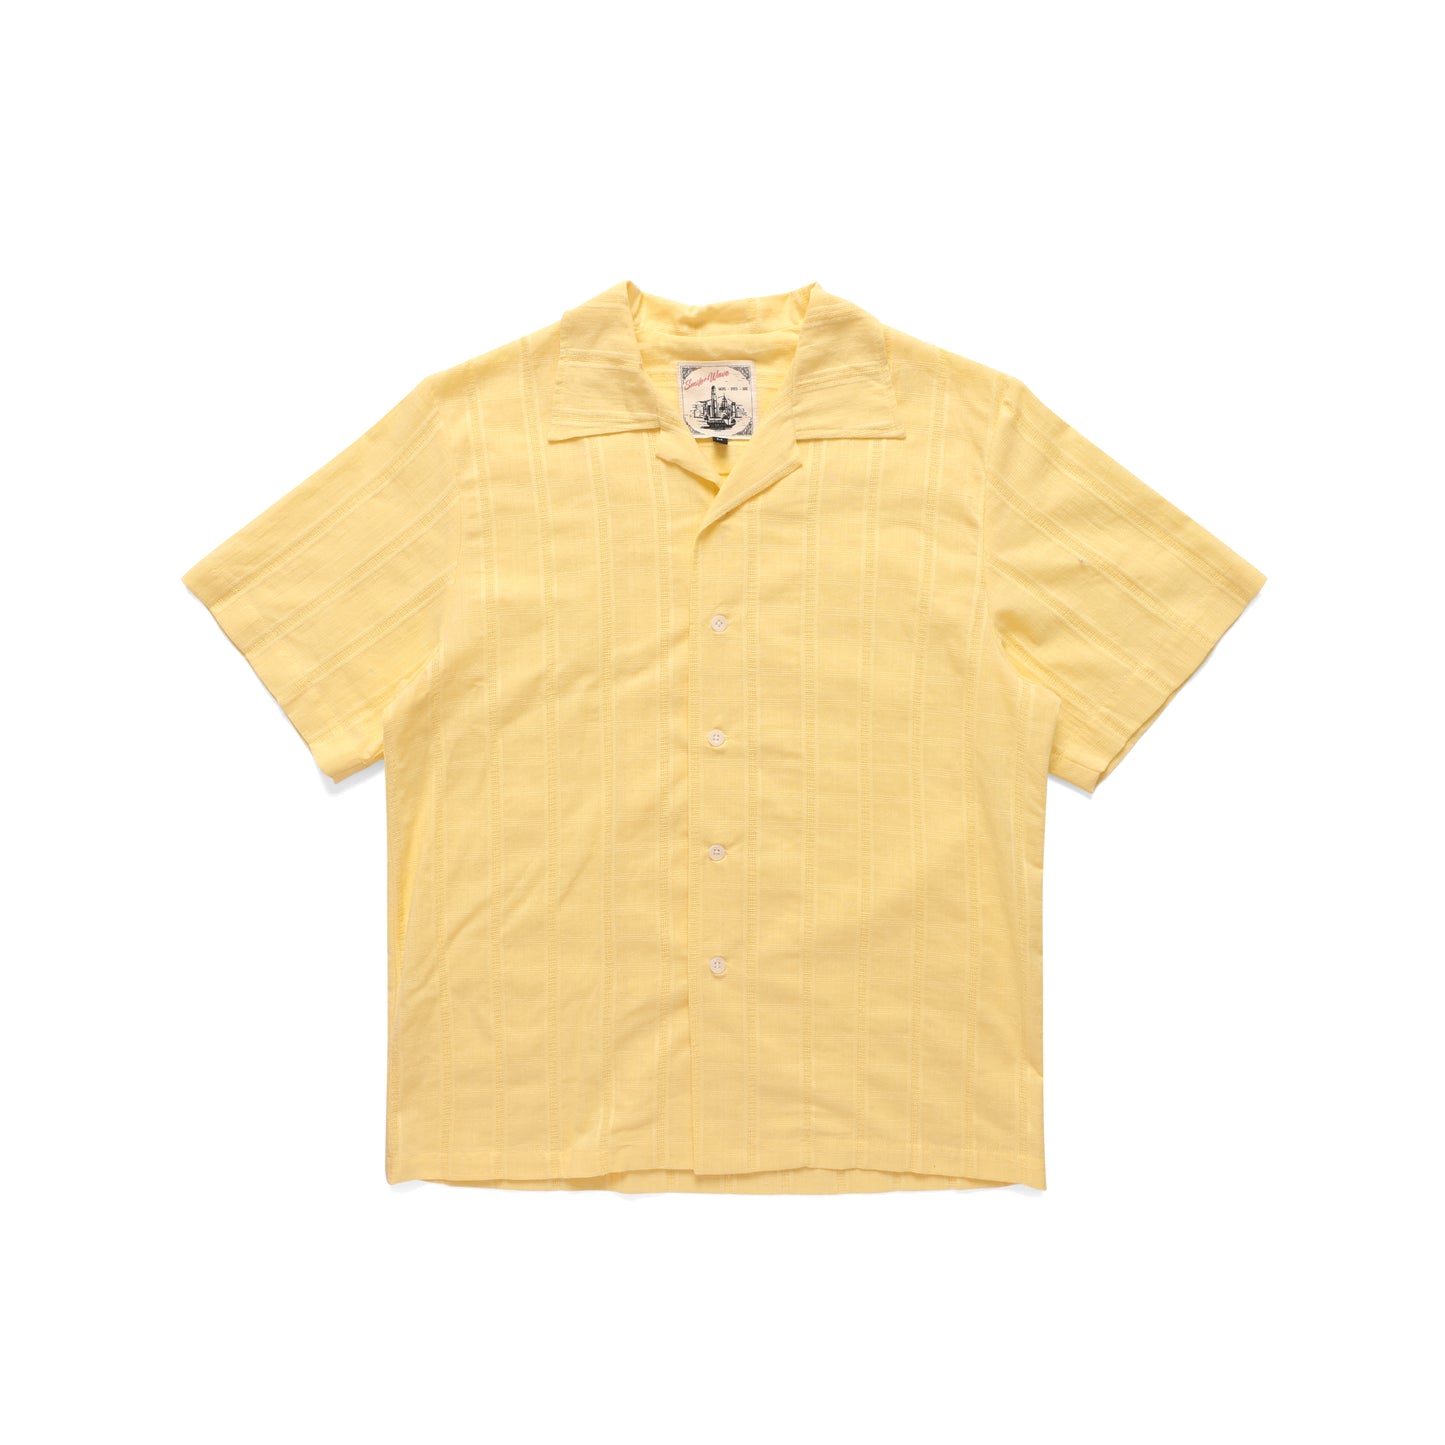 Buttermilk Shirt